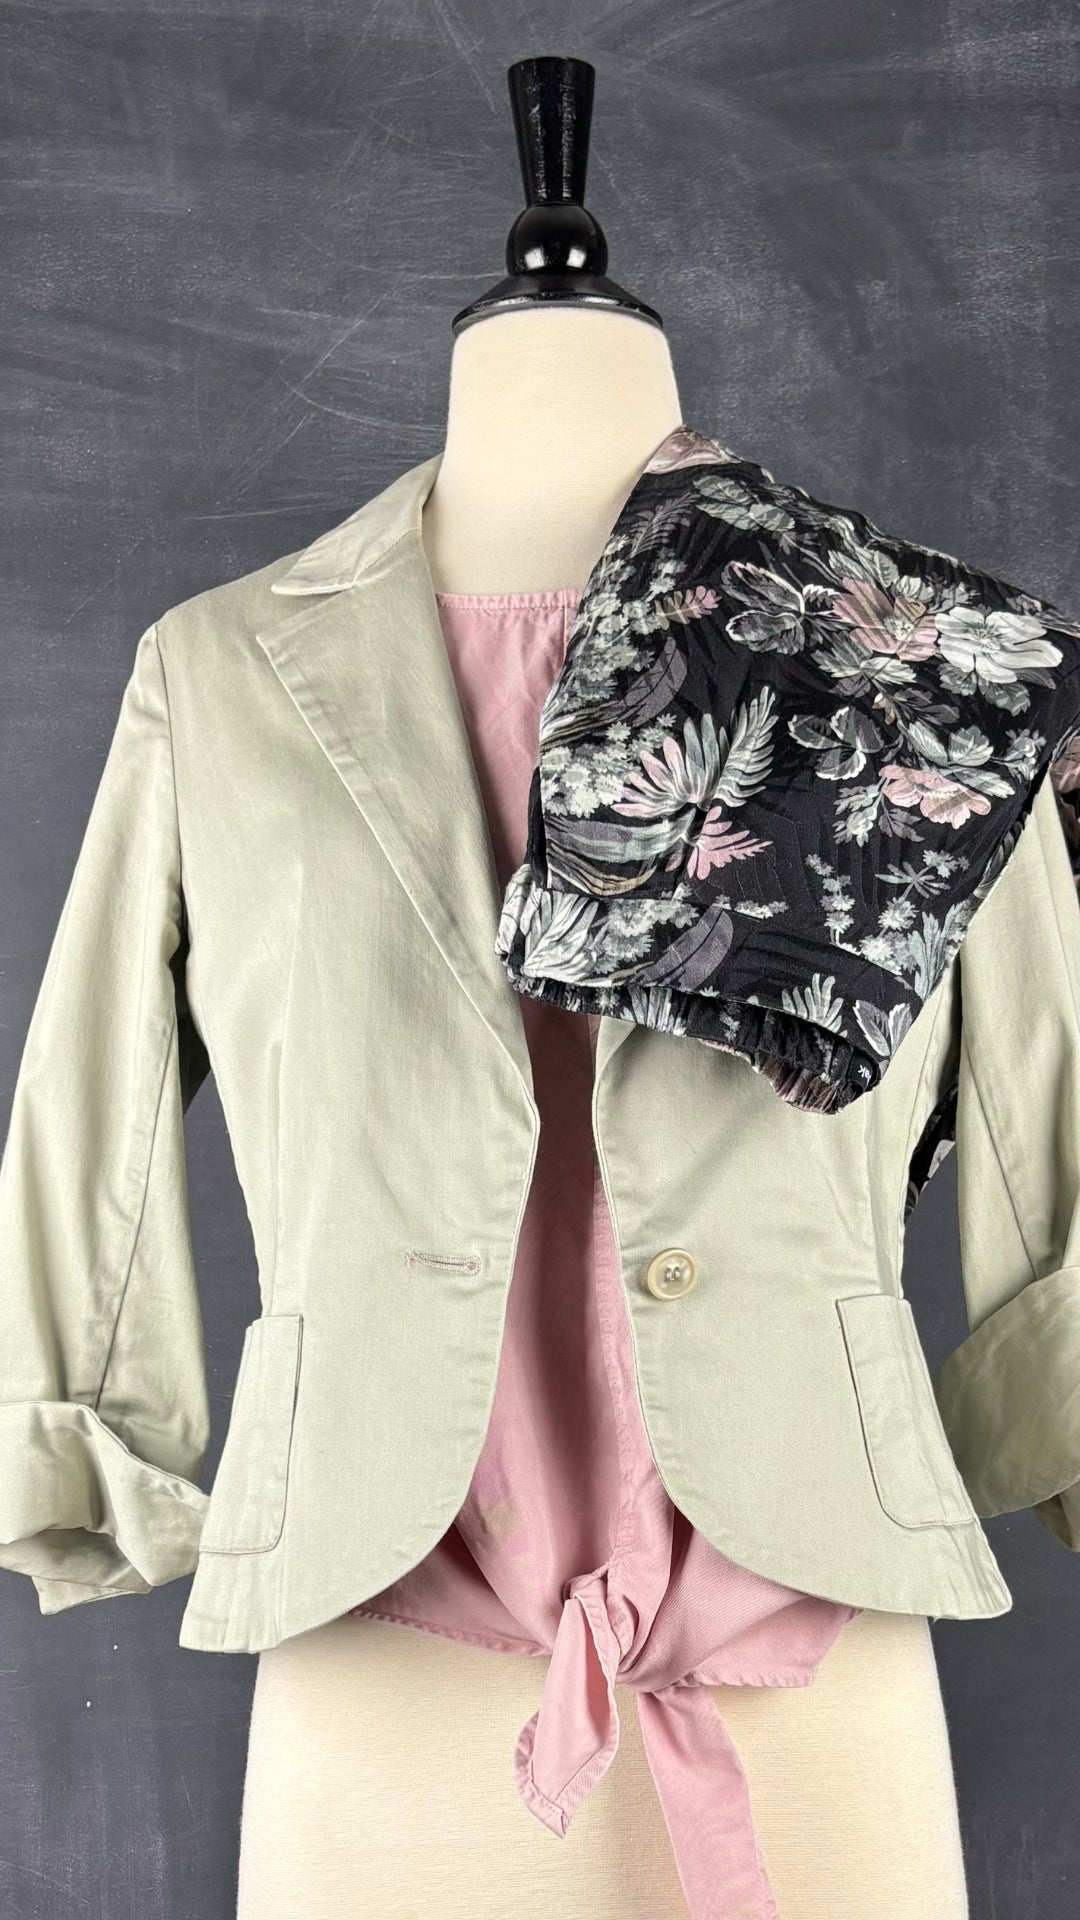 Pantalon floral confortable Frank and Oak, taille 2 (xs/s). Vue de l'agencement avec le haut noué boutonné au dos et le veston sauge.